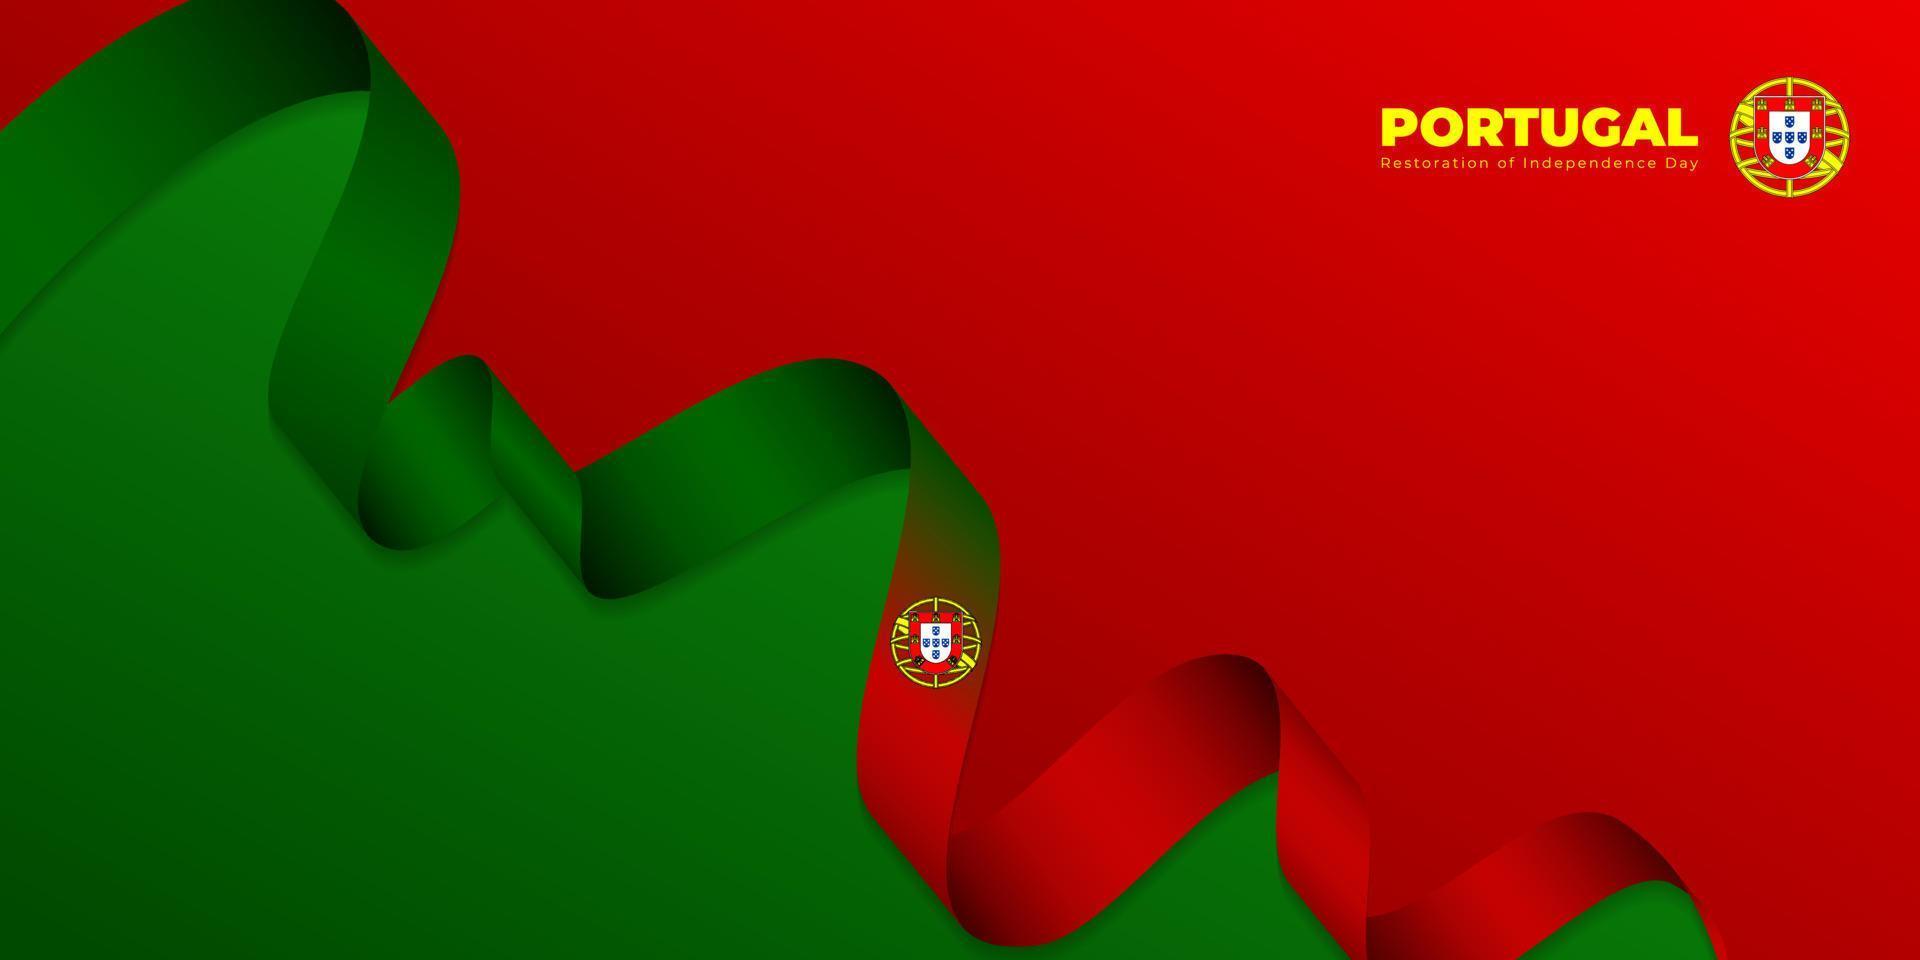 schwenkende portugiesische Bandfahne mit rotem und grünem Hintergrund. portugal restaurierung unabhängigkeitstag vorlagendesign. vektor